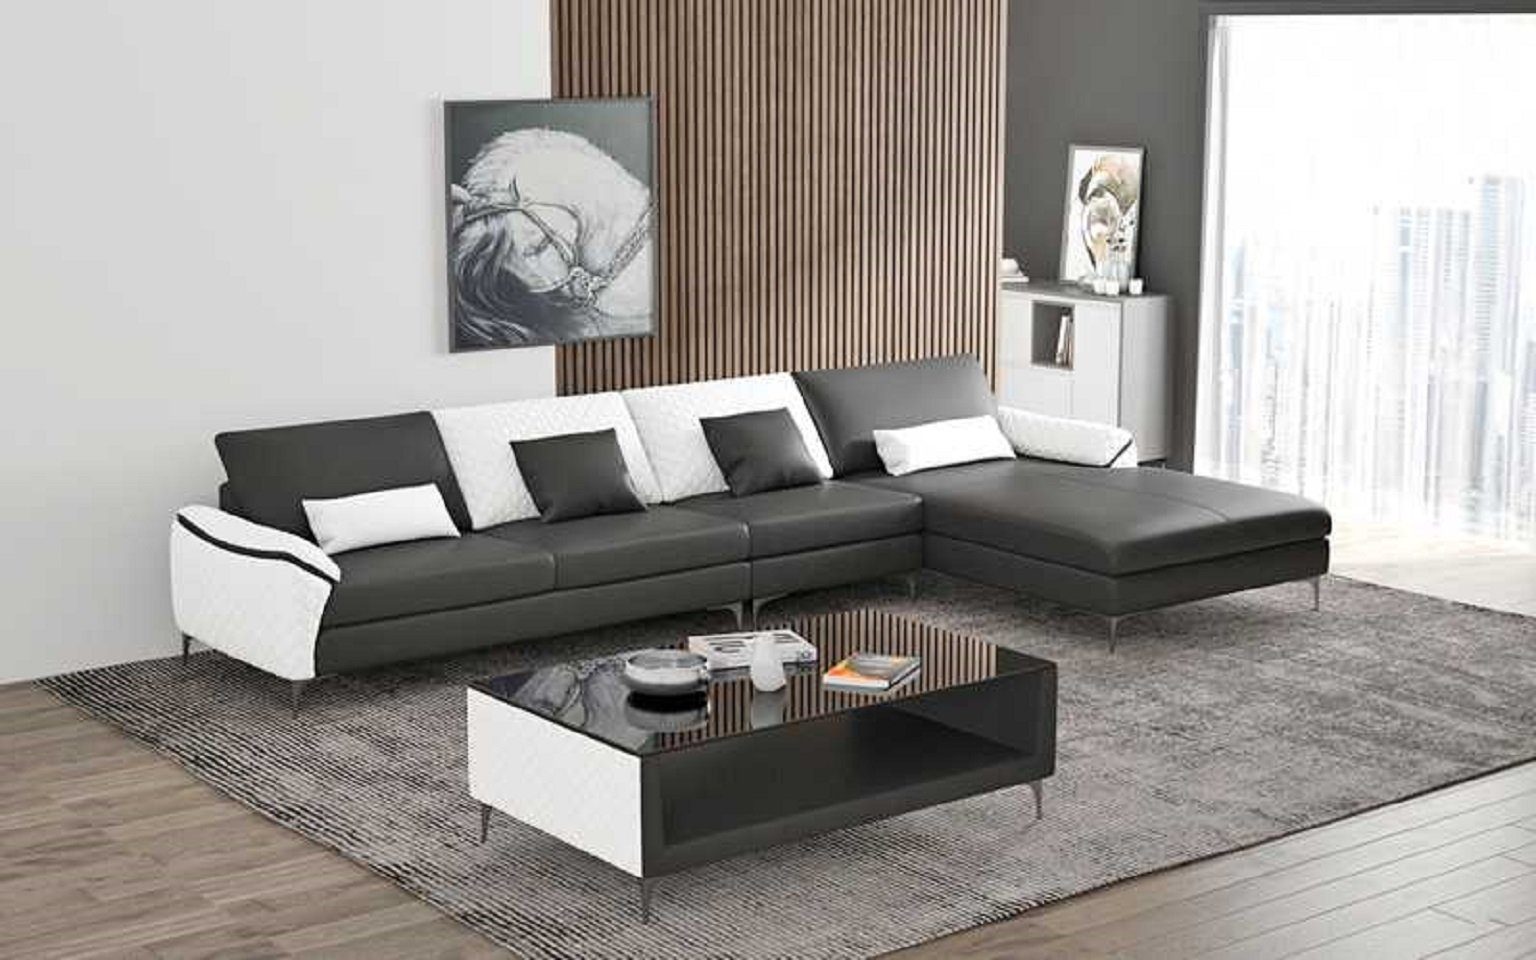 JVmoebel Ecksofa Luxus Eckgarnitur Ecksofa L Form Liege Couch Sofa Wohnzimmer, 3 Teile, Made in Europe Schwarz